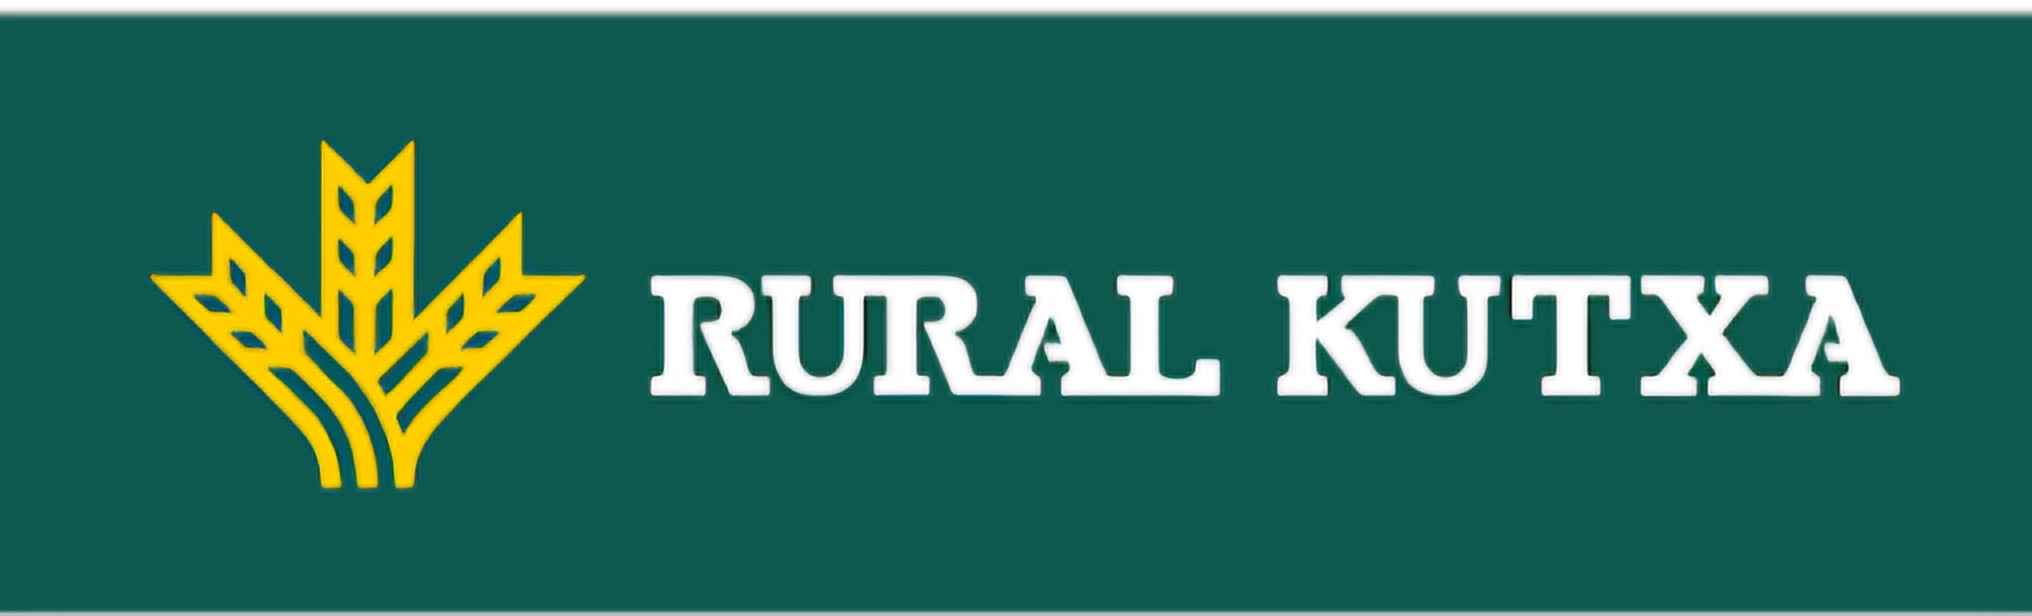 Logo Caja Rural - Rural Kutxa